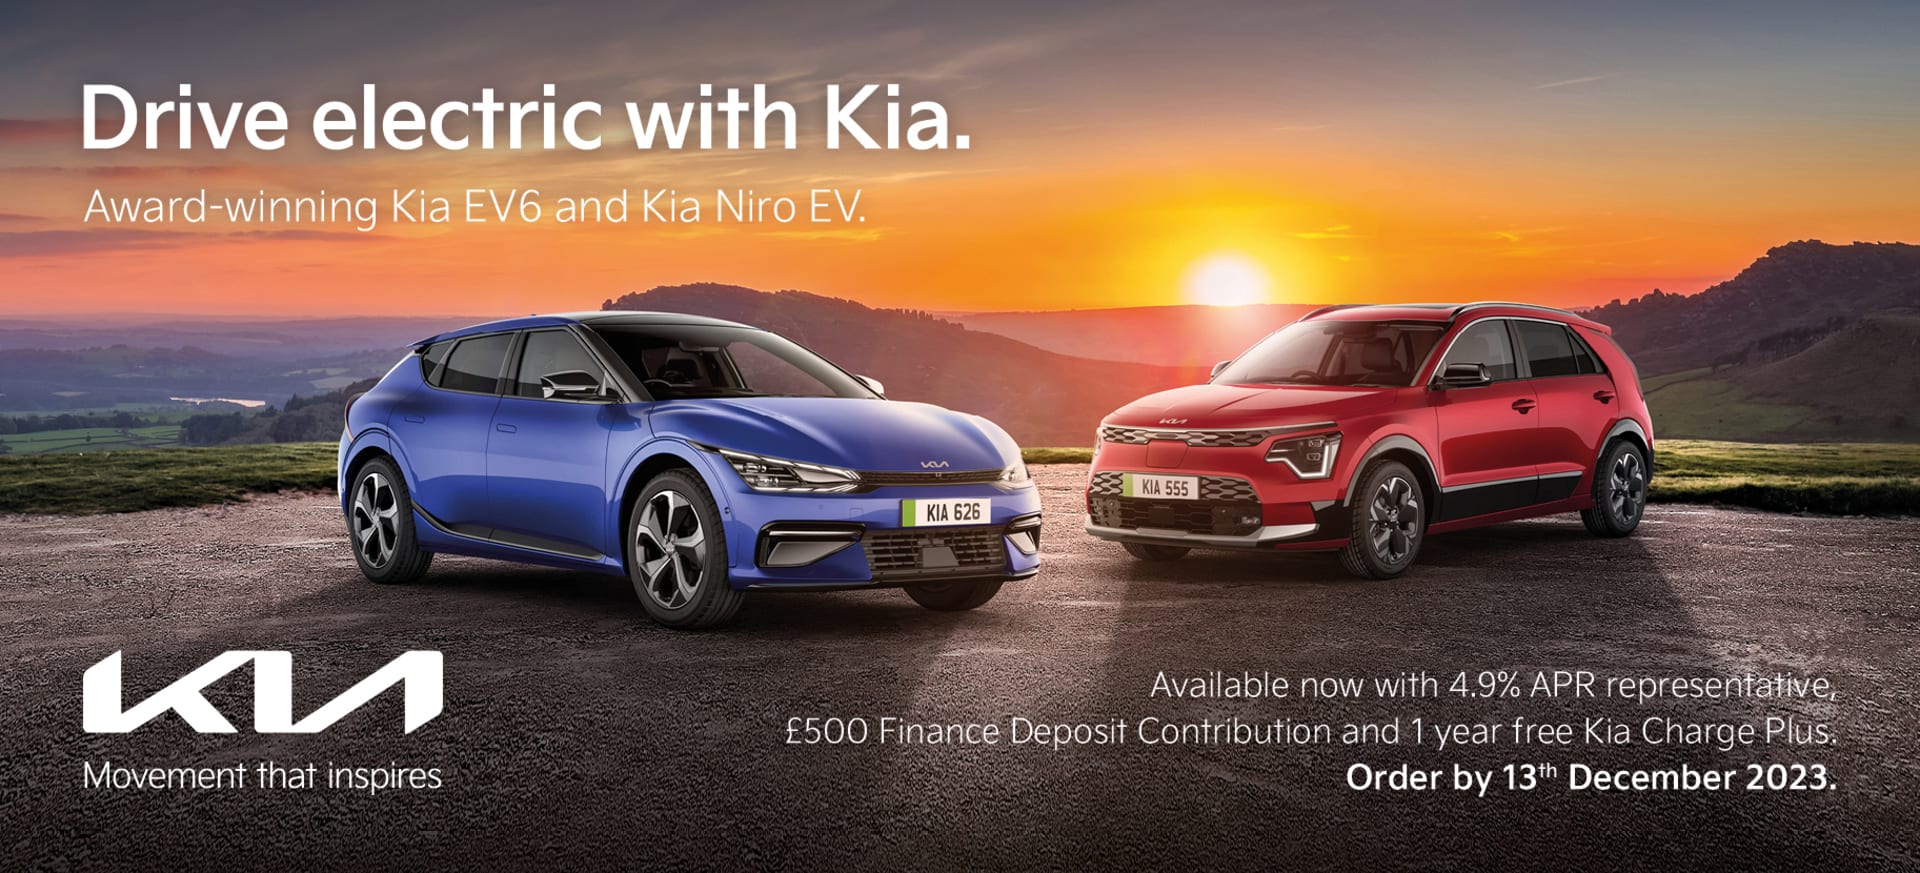 Drive Electric with Kia